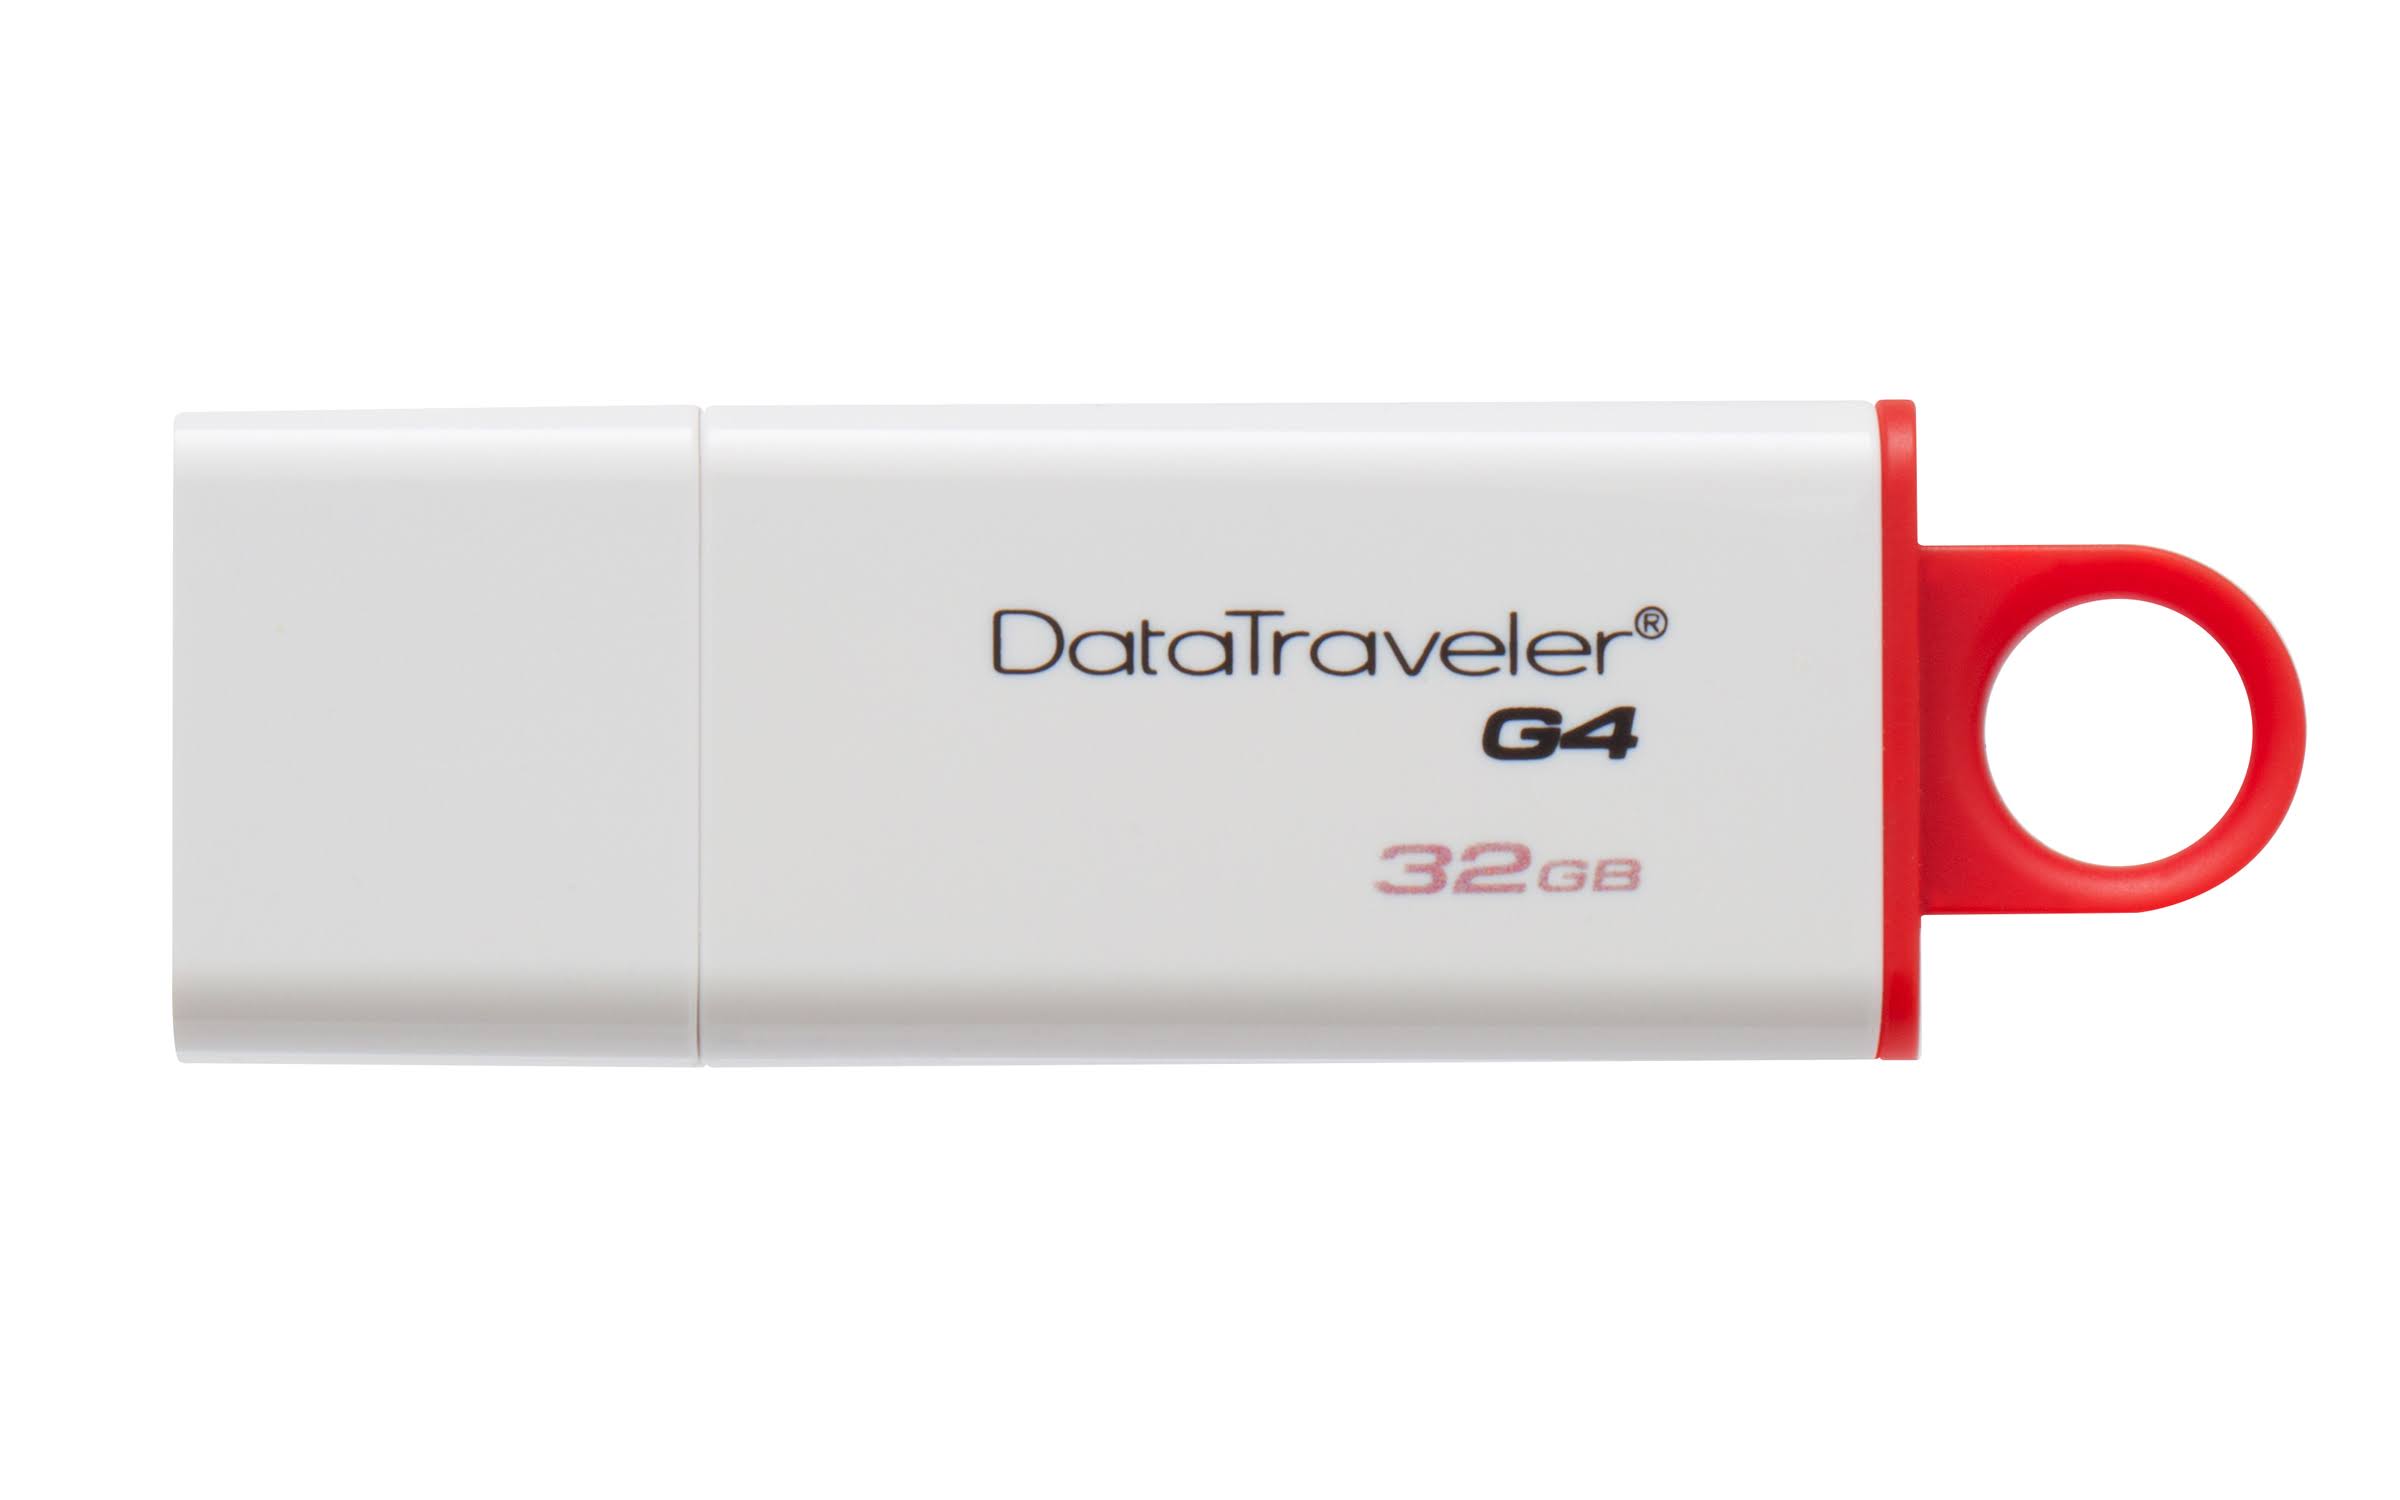 Kingston DataTraveler G4 Flash Drive - USB 3.0, 32gb